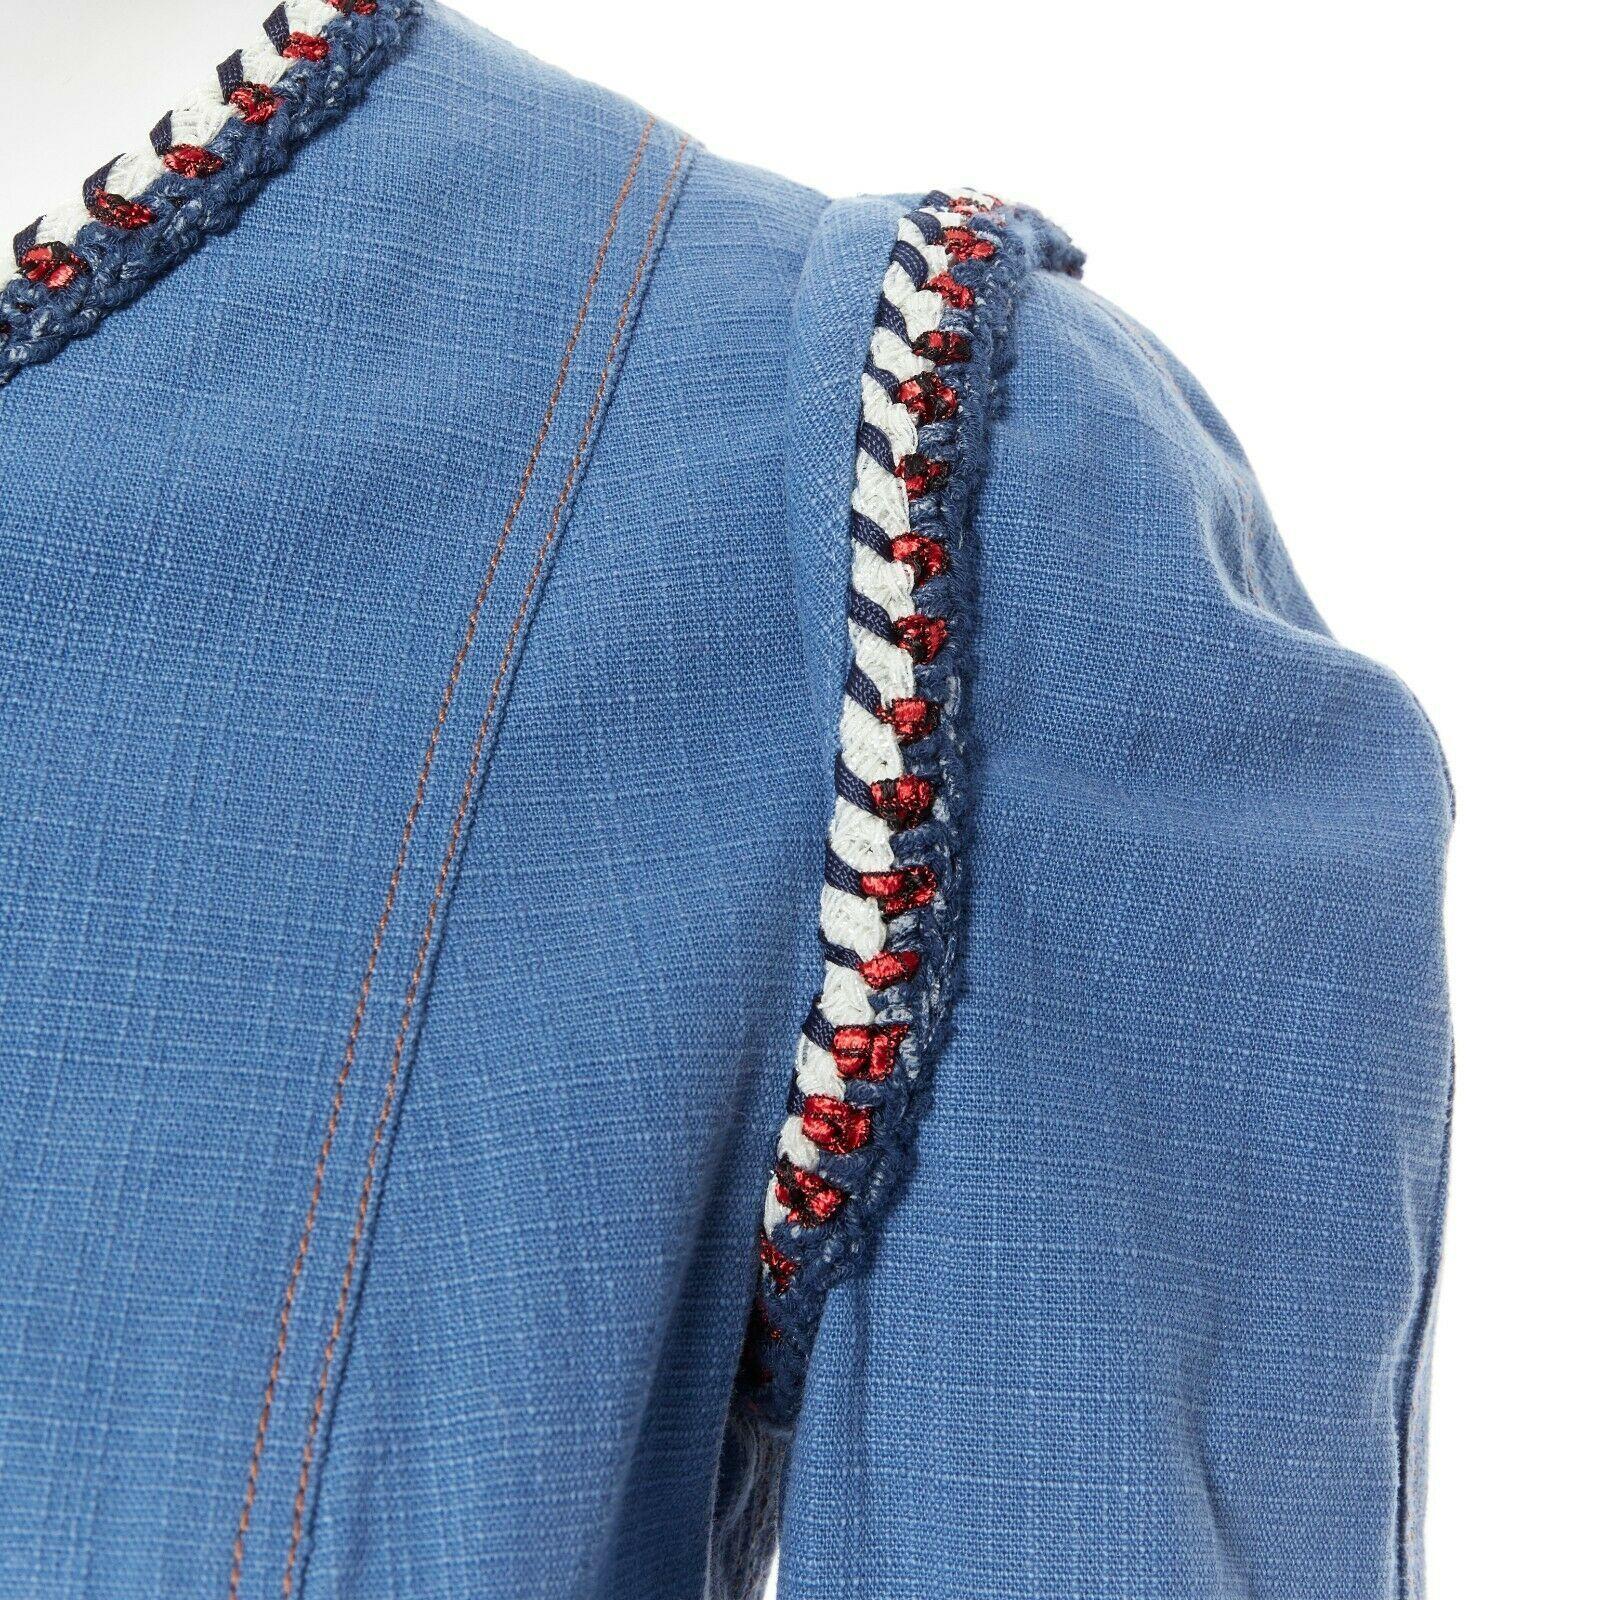 runway CHANEL 2013 tweed trimmings 3/4 sleeves blue denim jacket FR34 XS 2